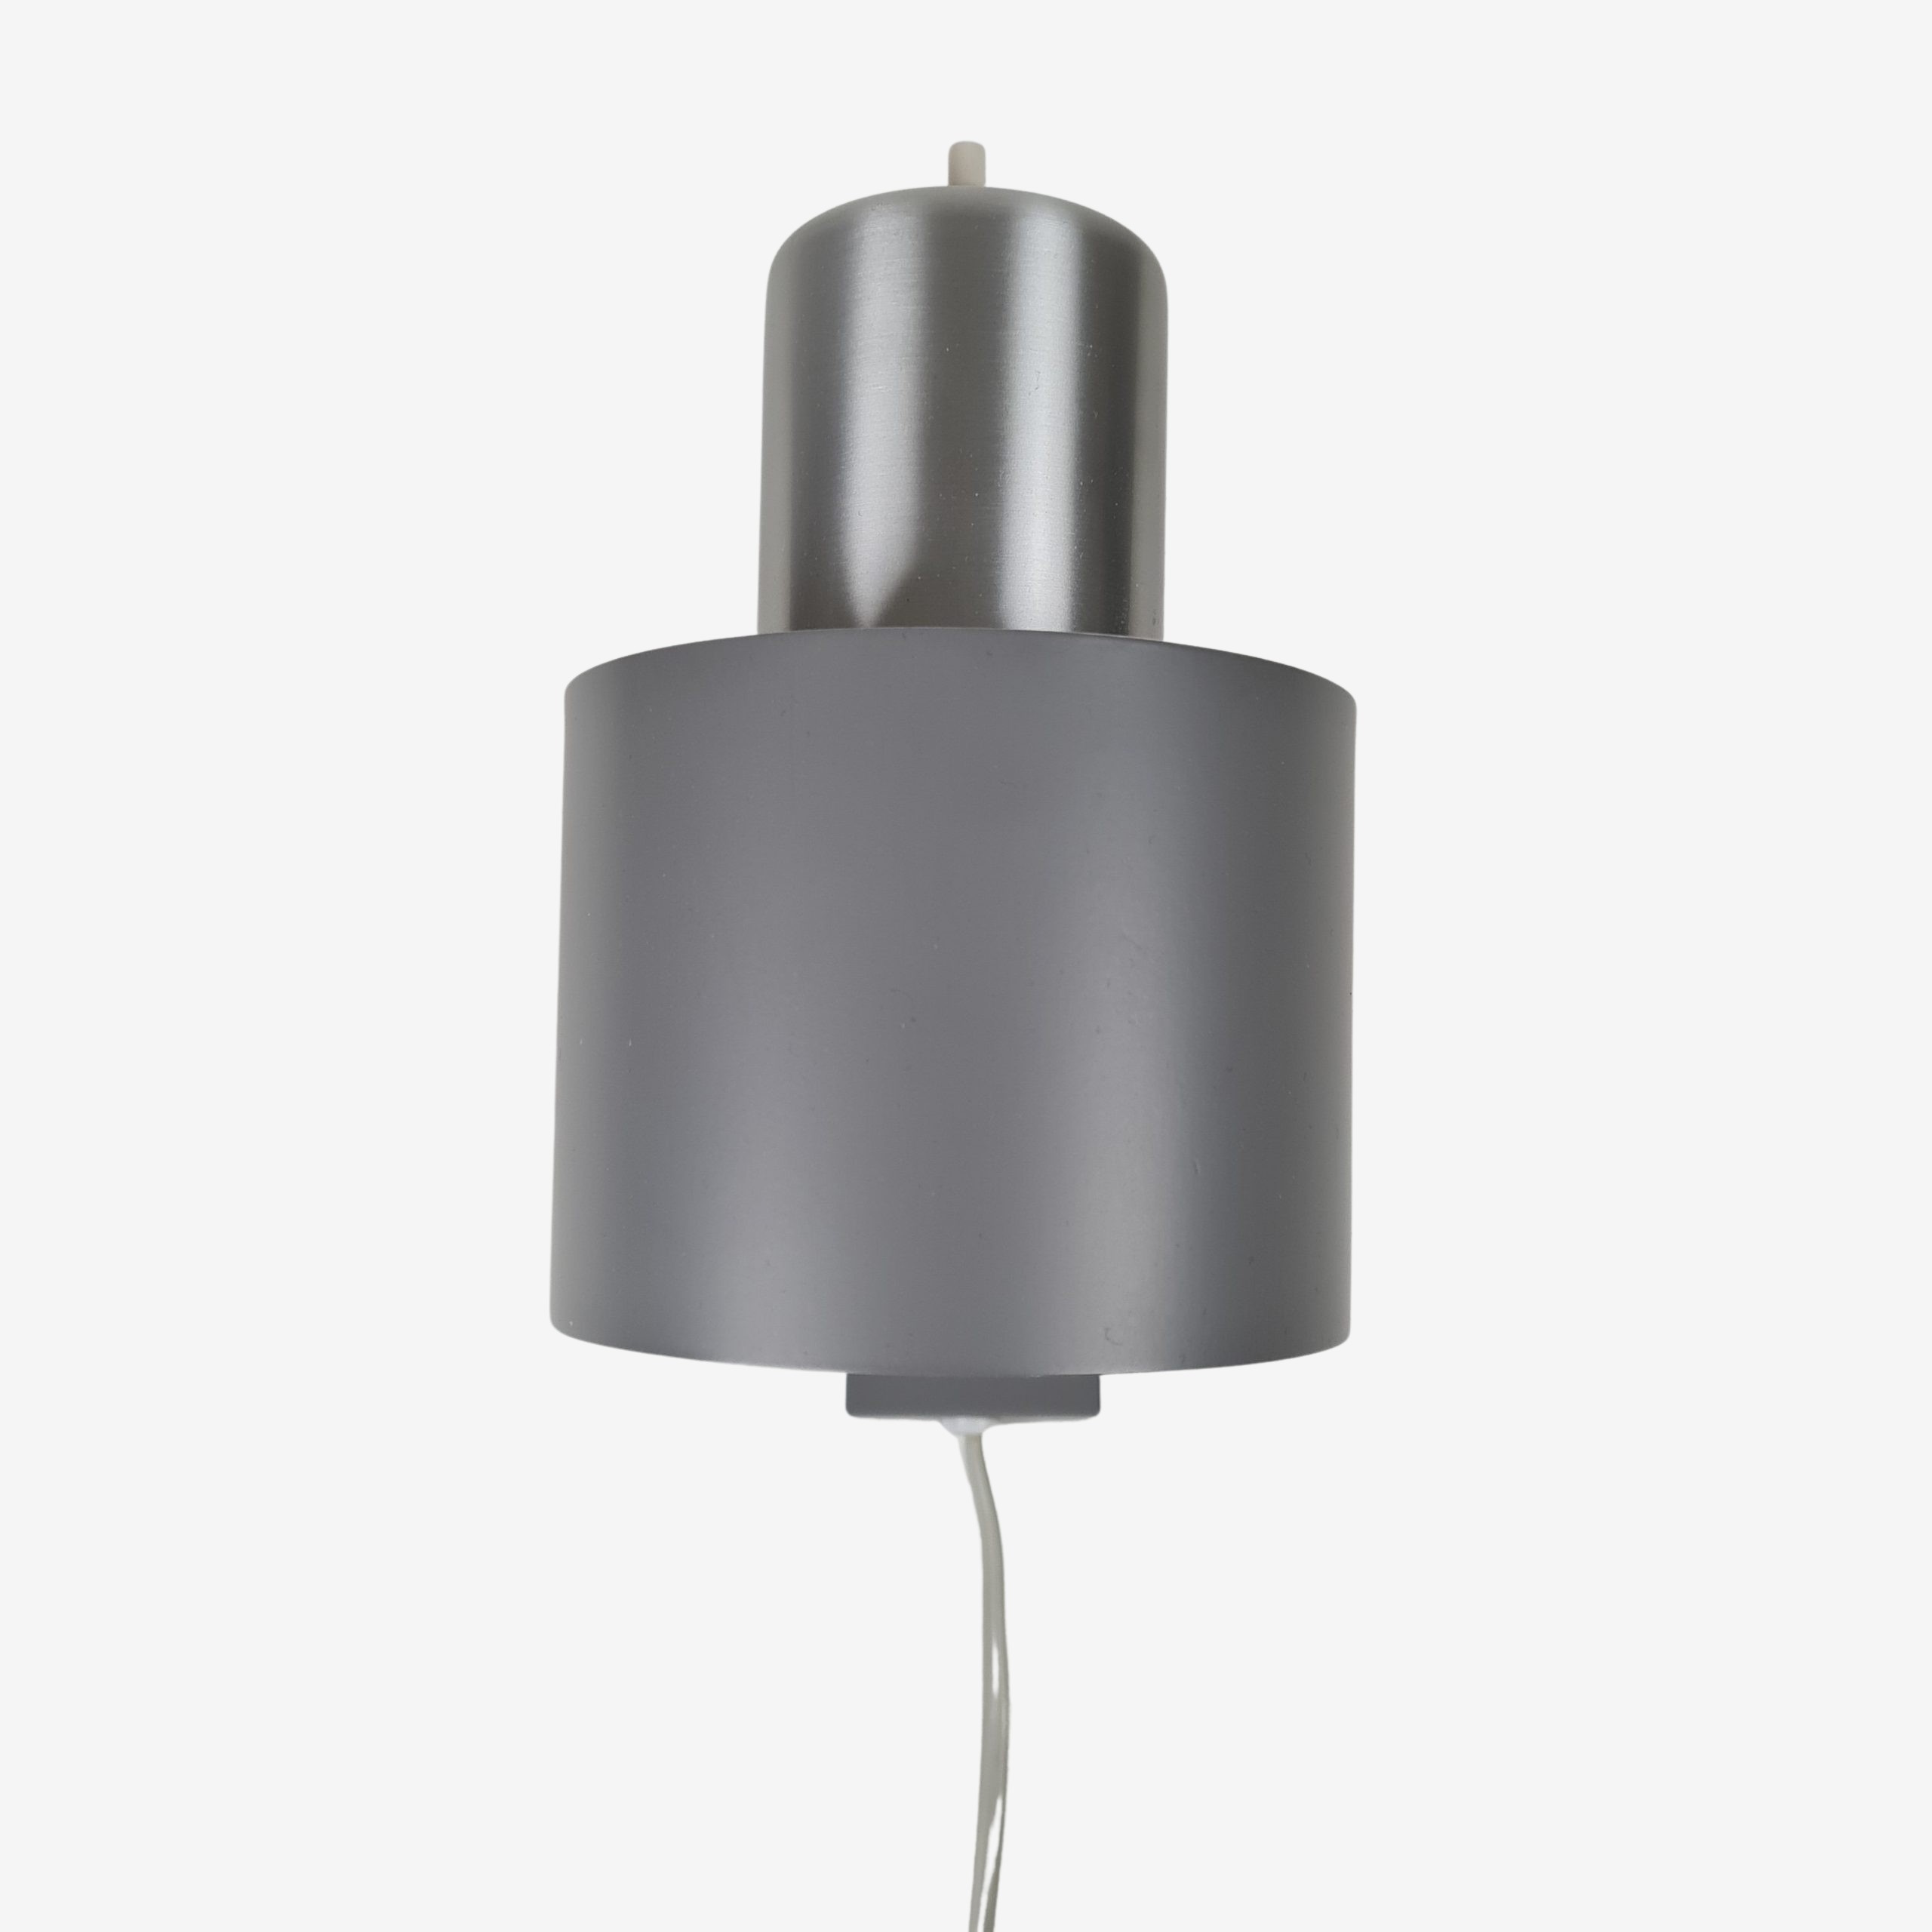 Wall-mounted lamp | Model Alfa | Jo Hammerborg | Fog & Mørup